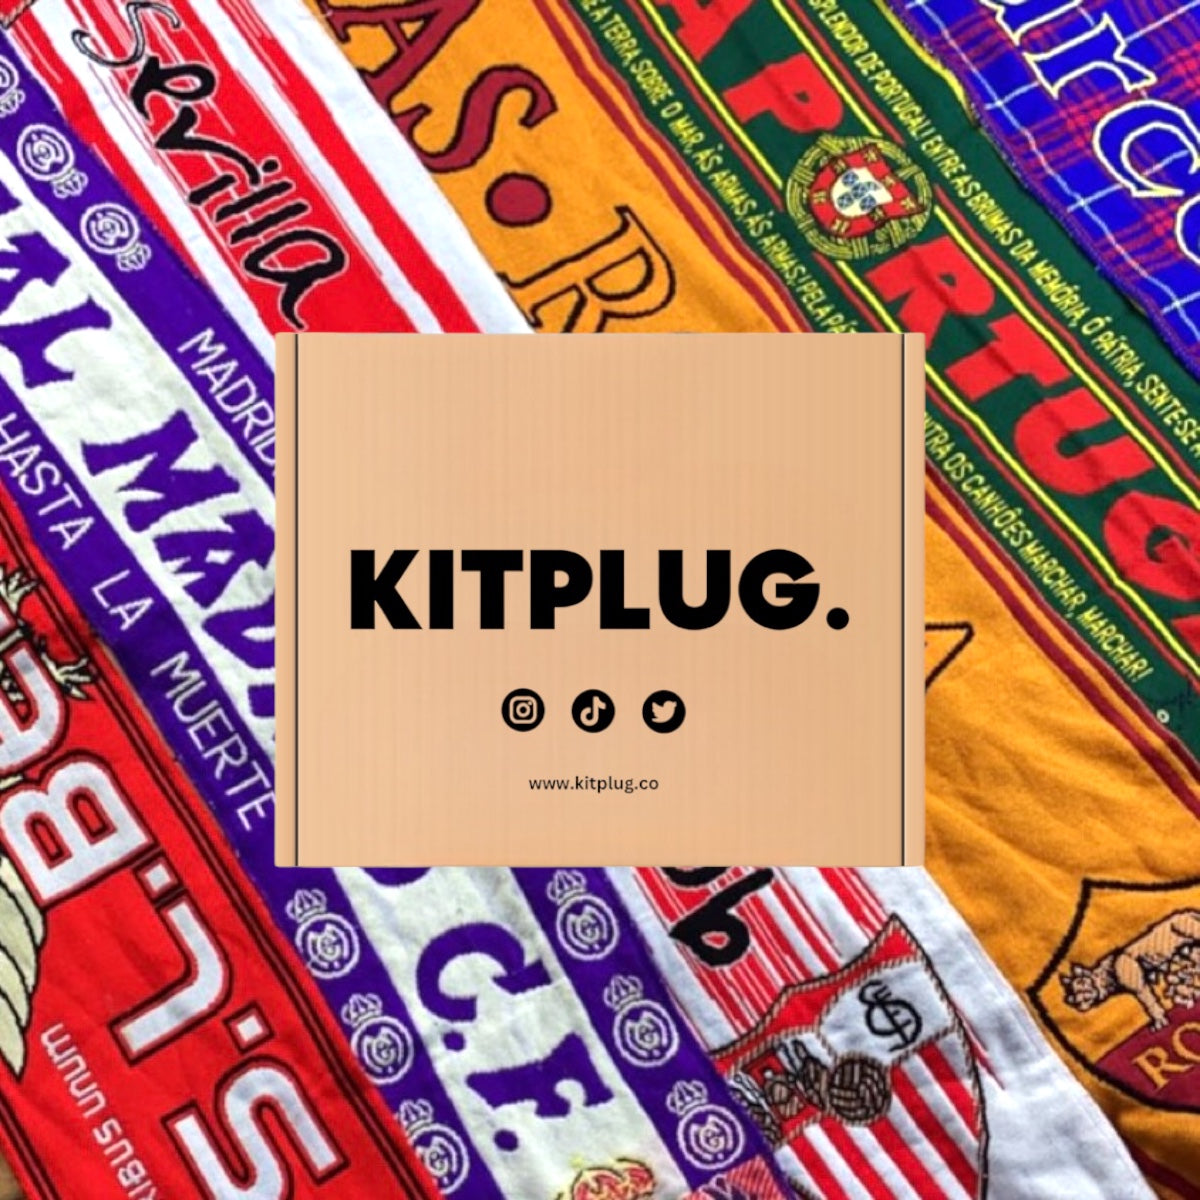 Kitplug